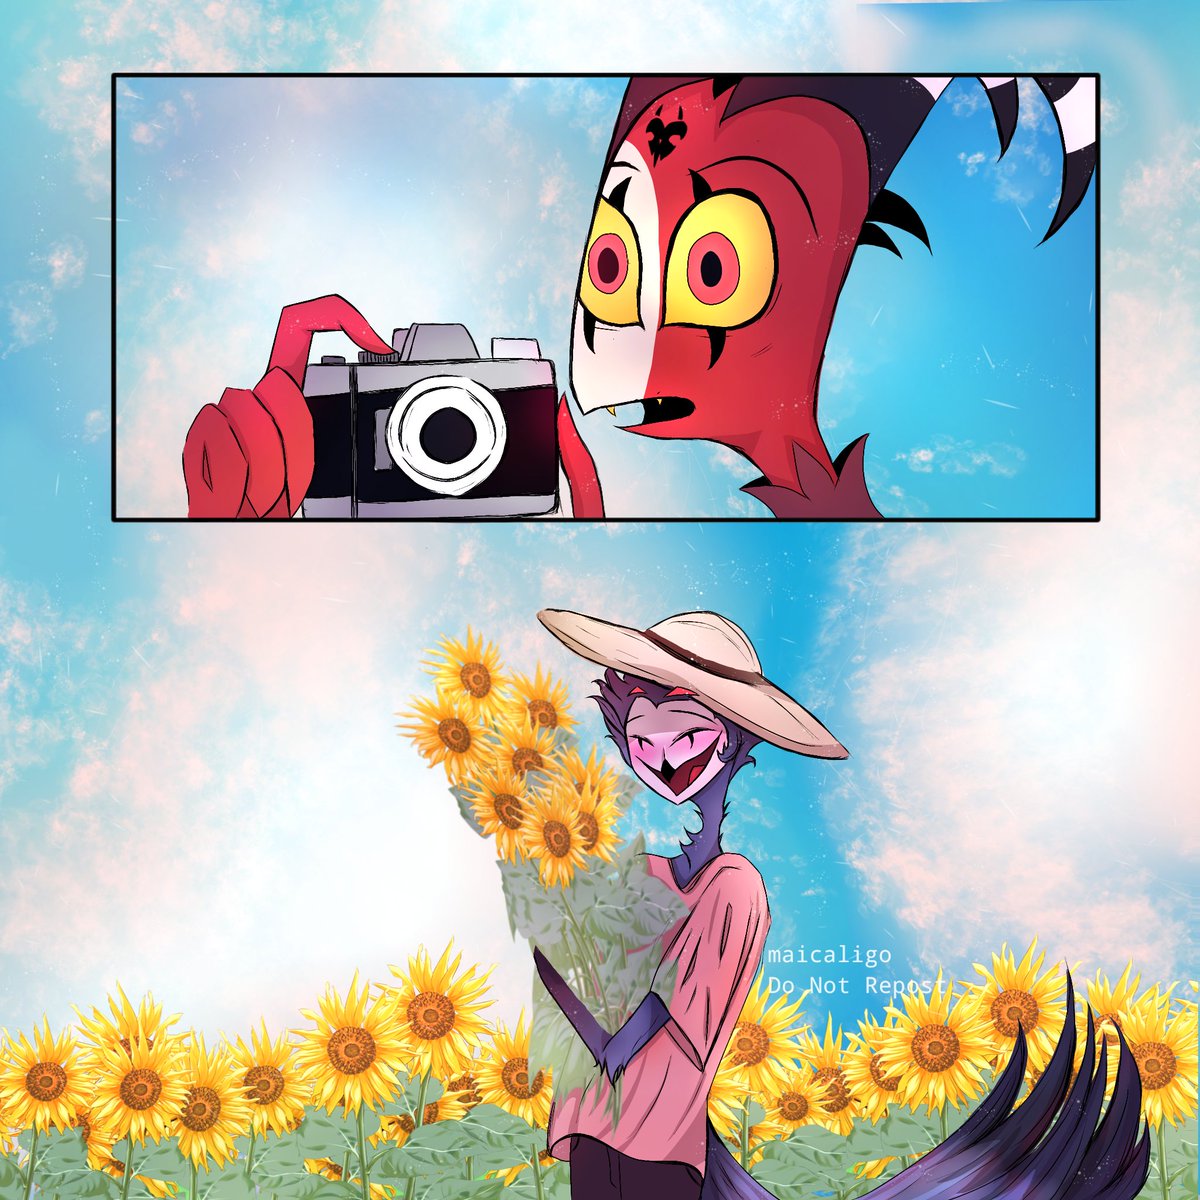 Dating at Sunflower field Pt2🌻 
#HelluvaBoss #HelluvaBossBlitzo #HelluvaBossStolus #Stolitz #HelluvaBossFanart #fanart #Sunflower